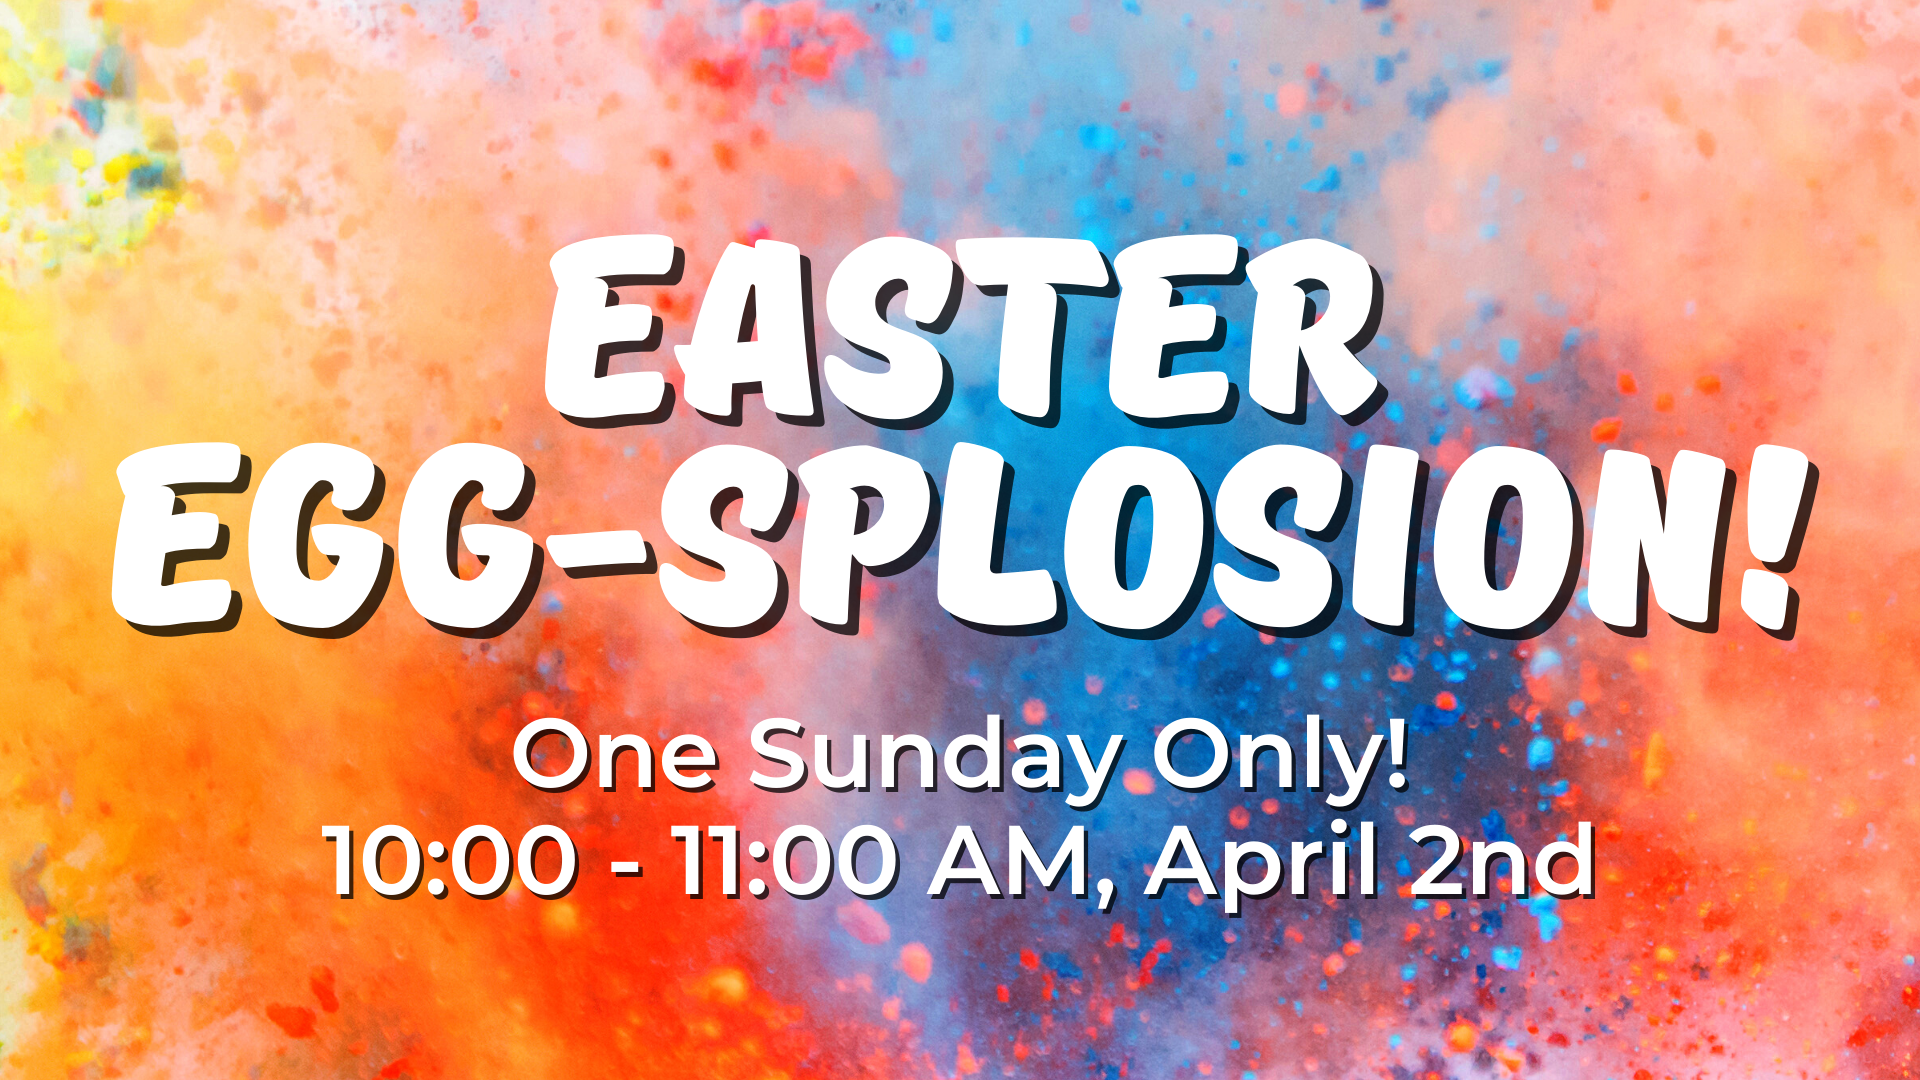 Easter Egg-splosion